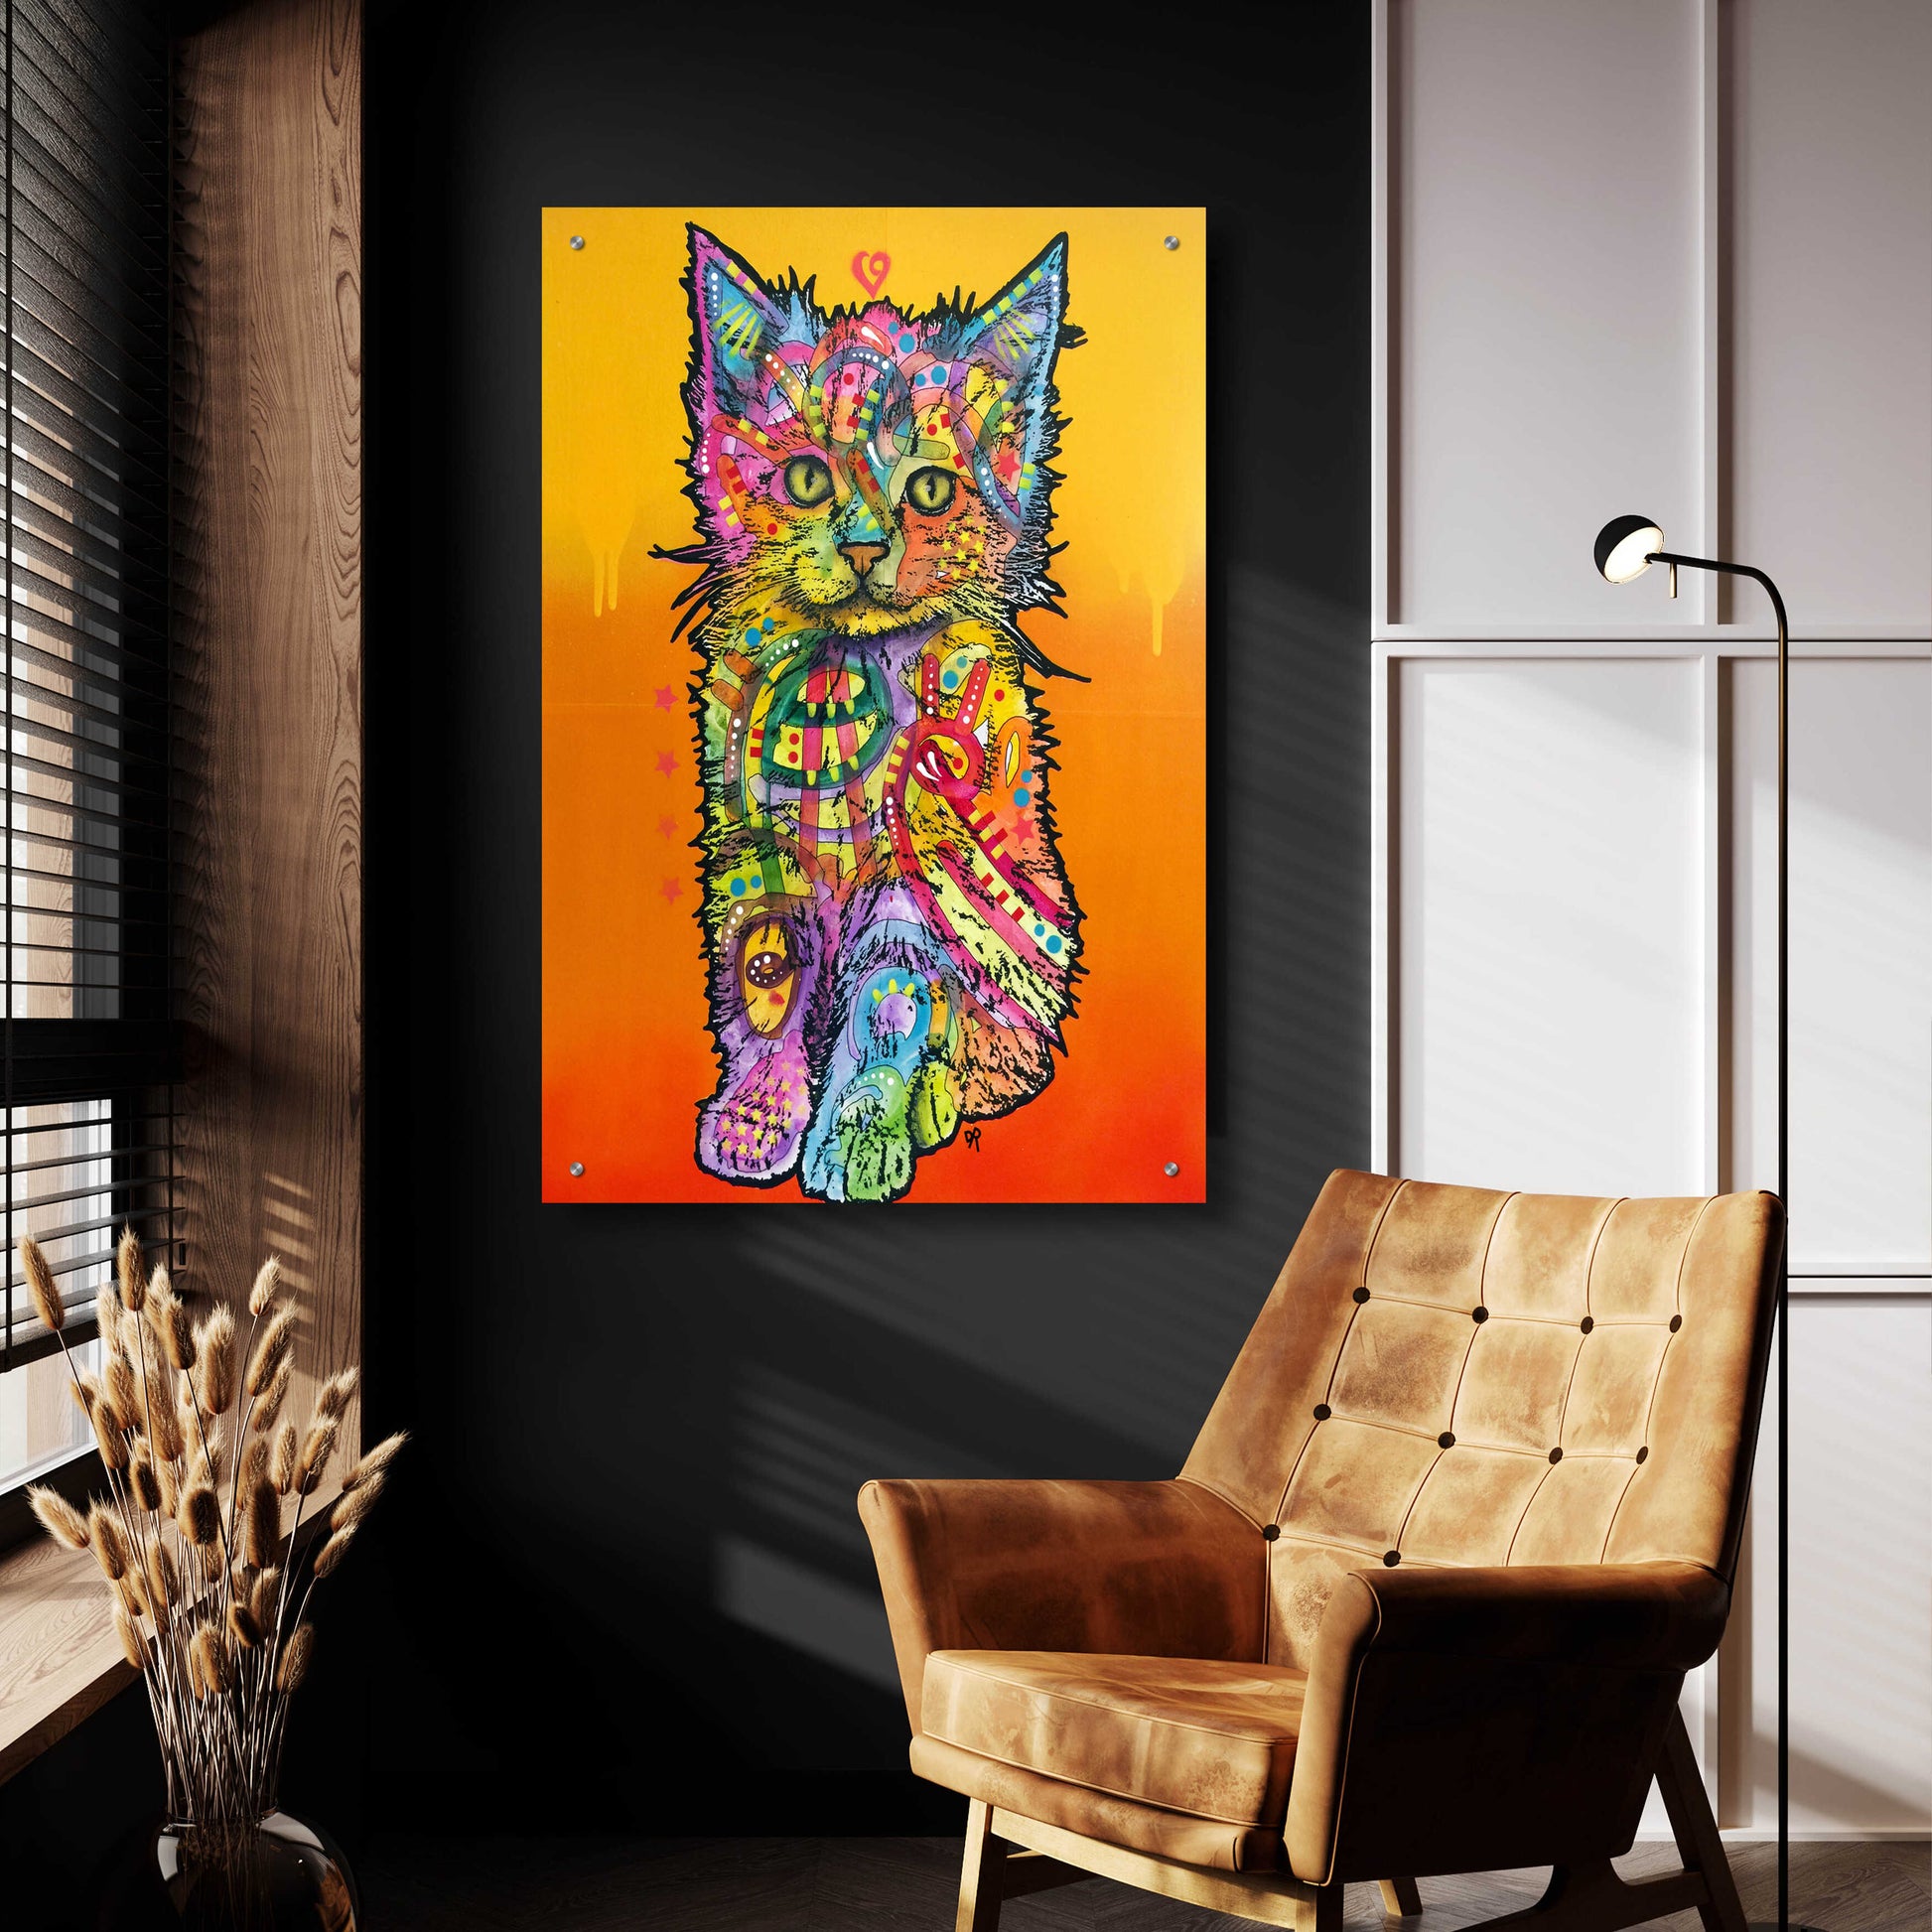 Epic Art 'Love Kitten' by Dean Russo, Acrylic Glass Wall Art,24x36